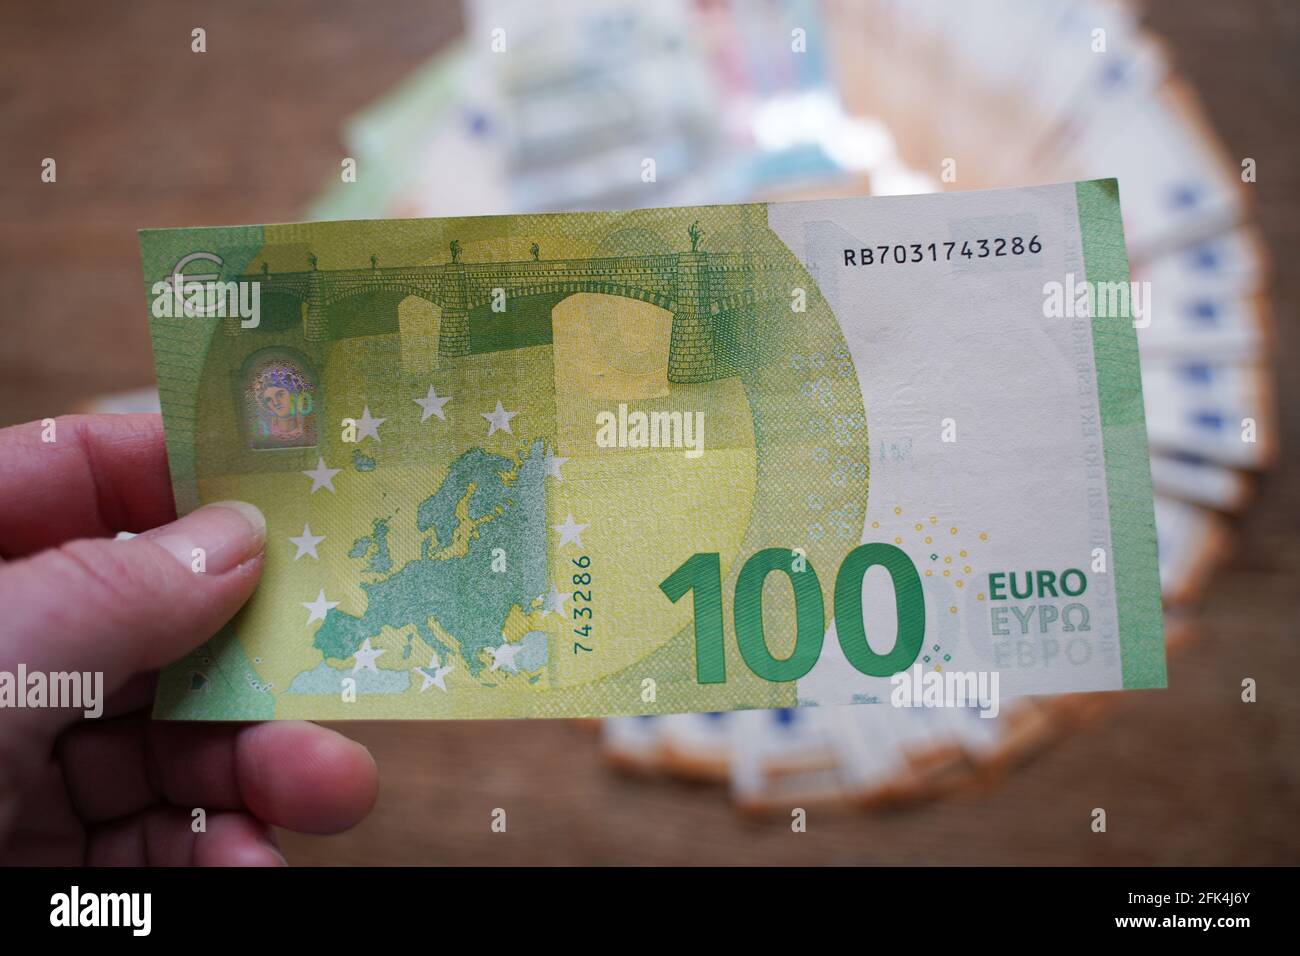 100 euro to sek